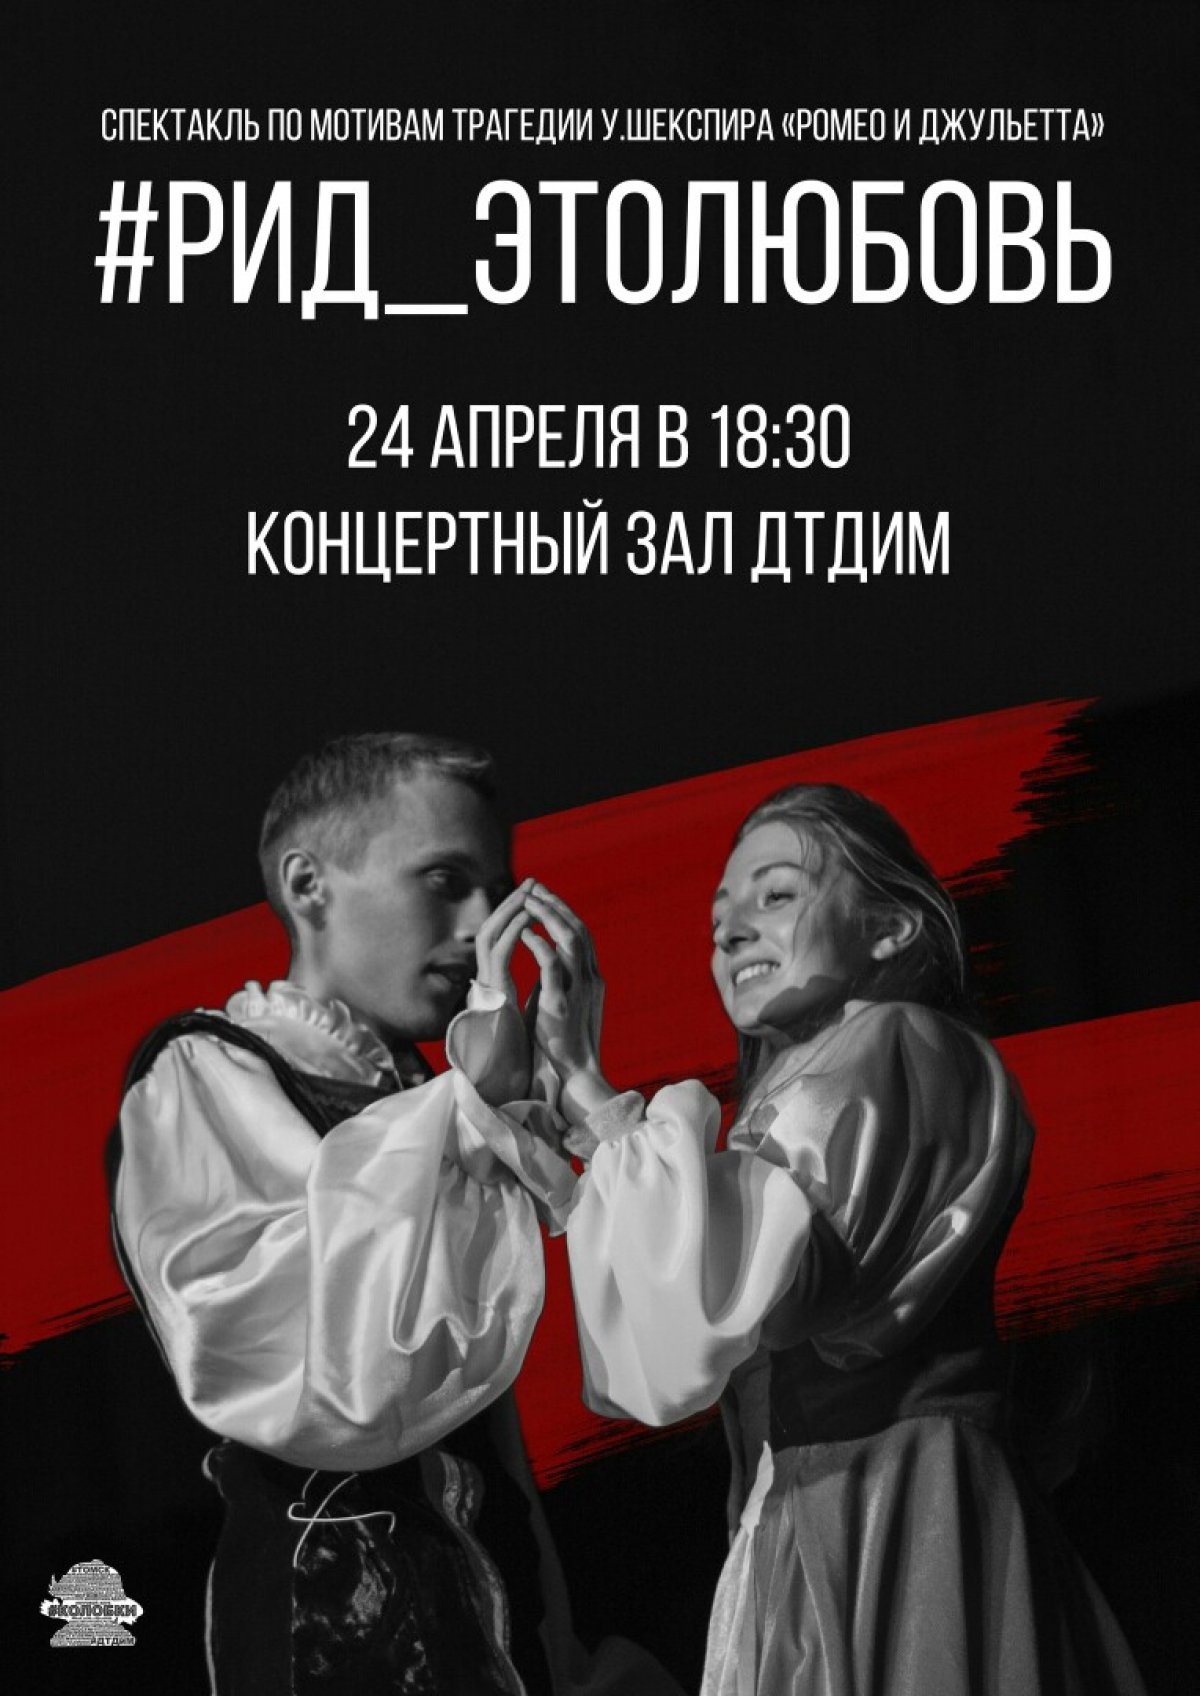 24 апреля в 18:30 во Дворце творчества детей и молодежи г.Томска состоится спектакль по мотивам трагедии У. Шекспира